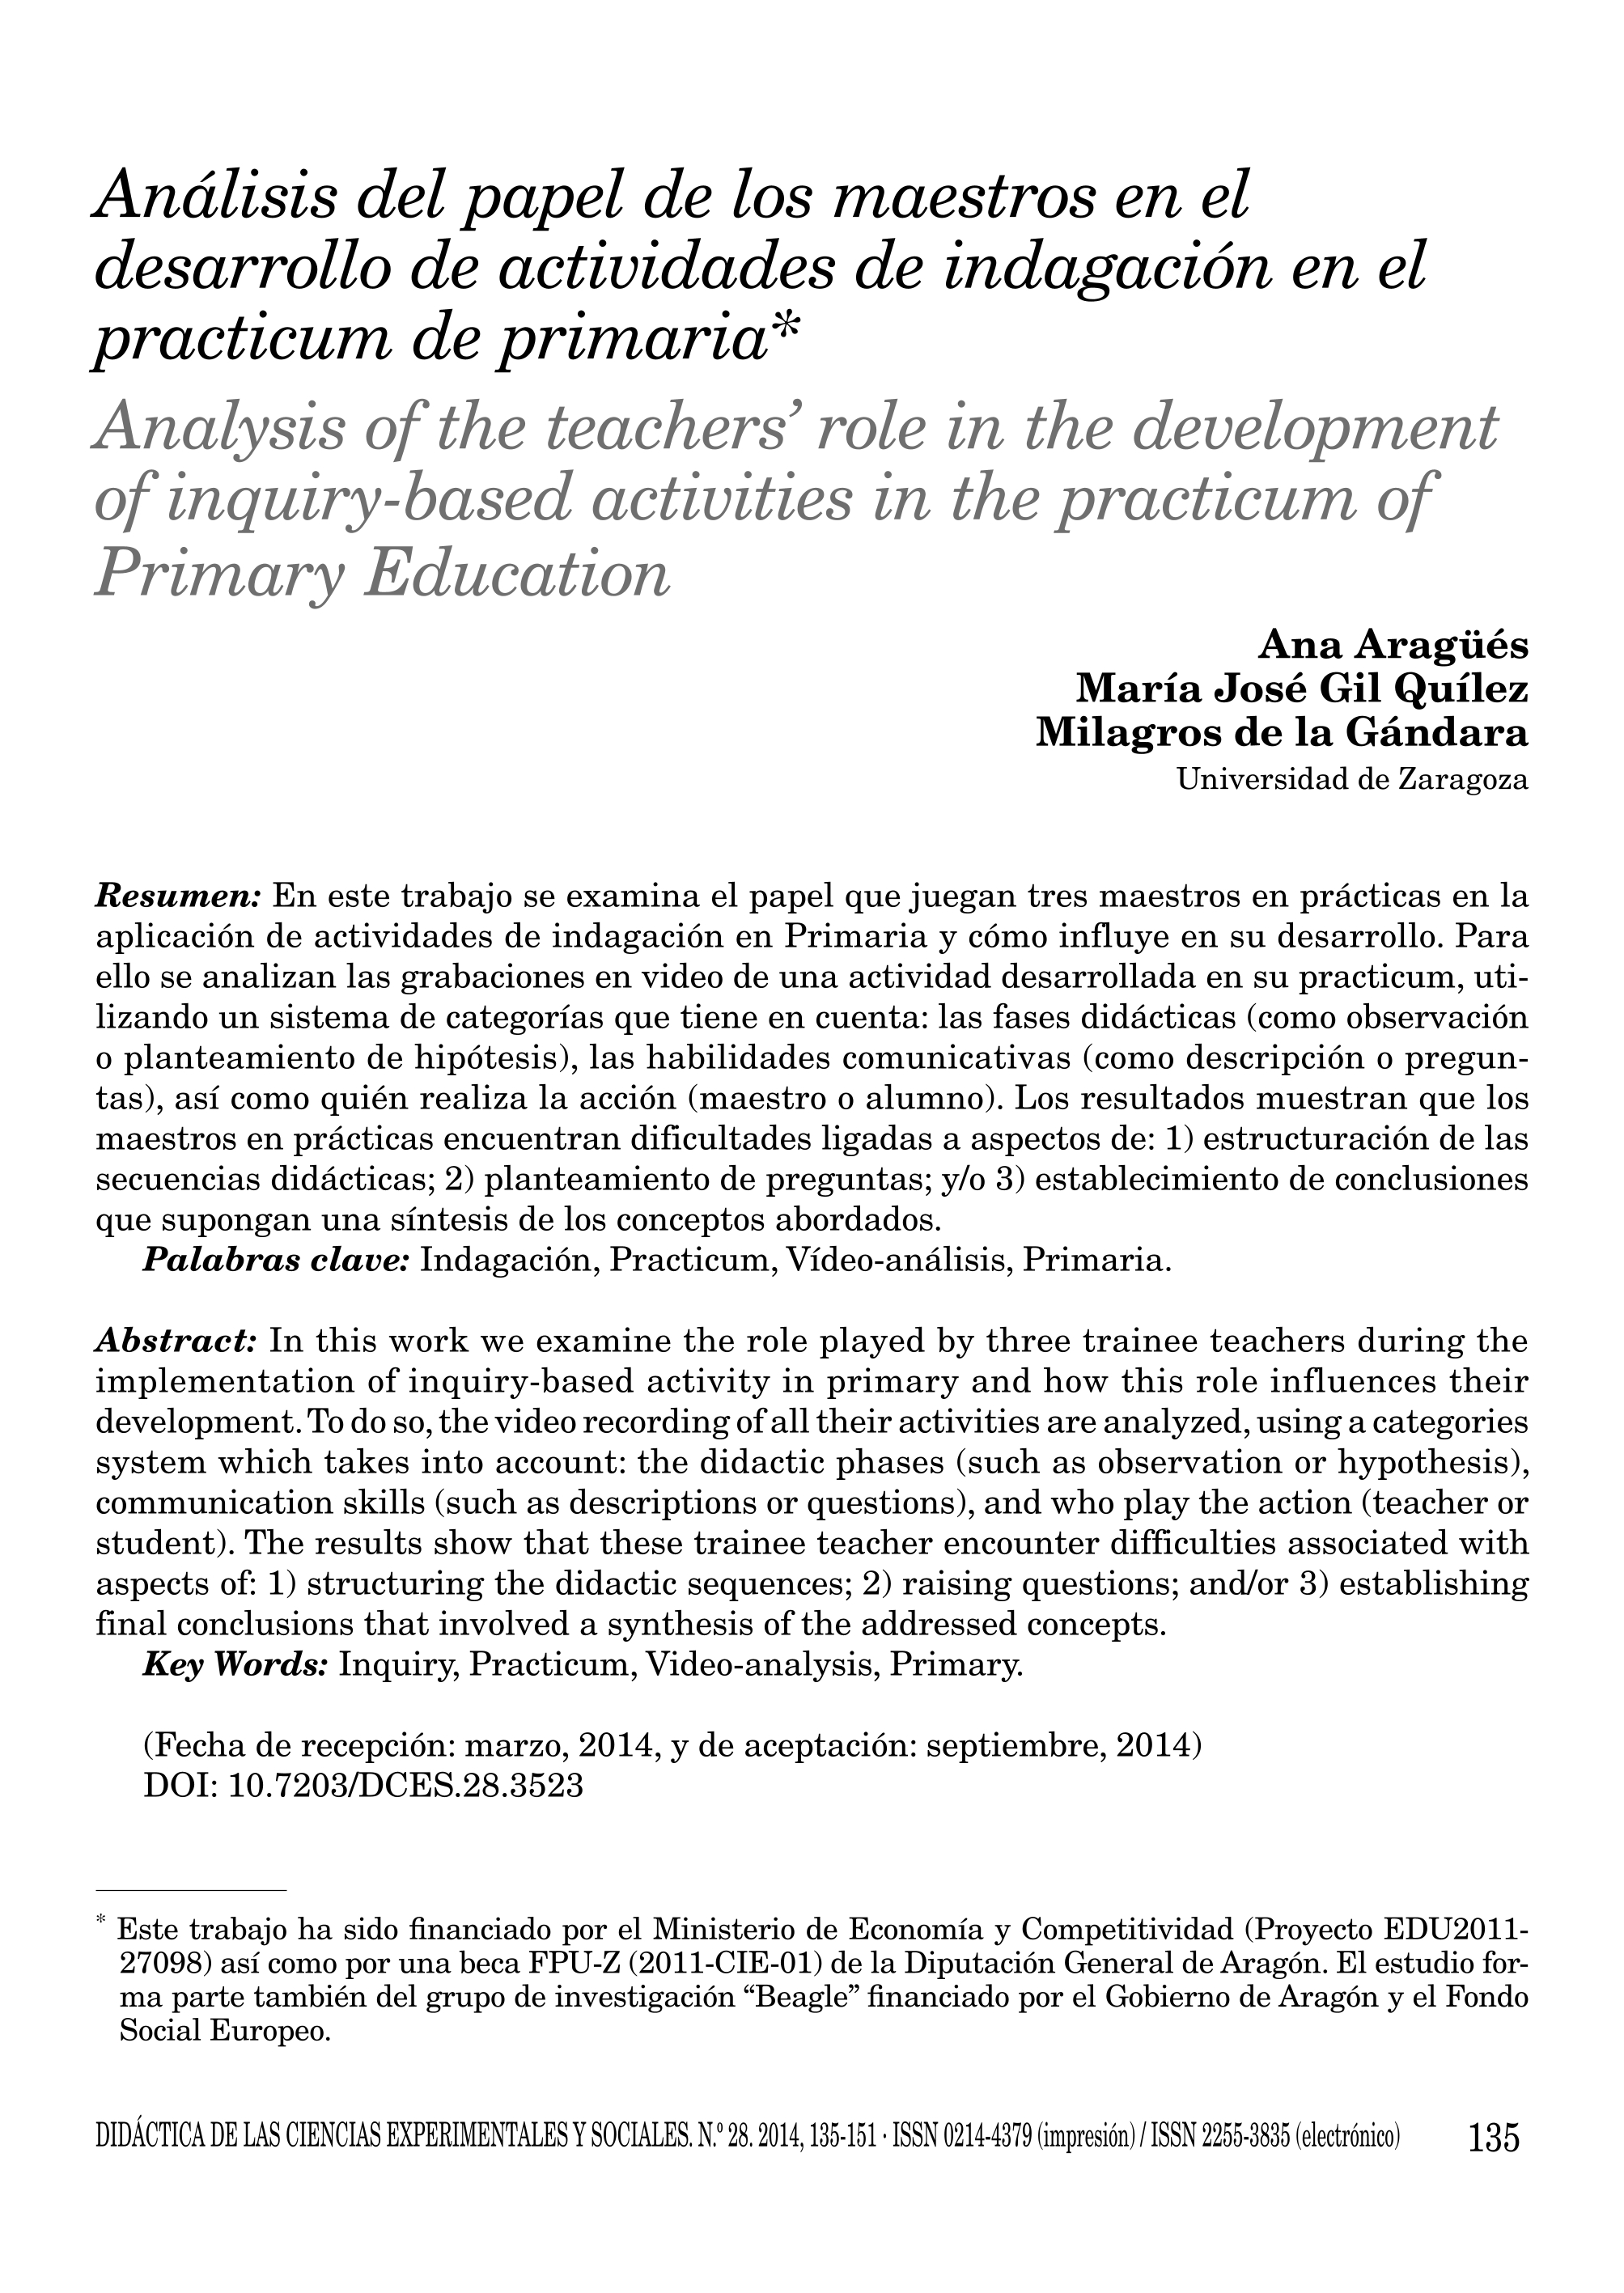 Análisis del papel de los maestros en el desarrollo de actividades de indagación en el practicum de primaria